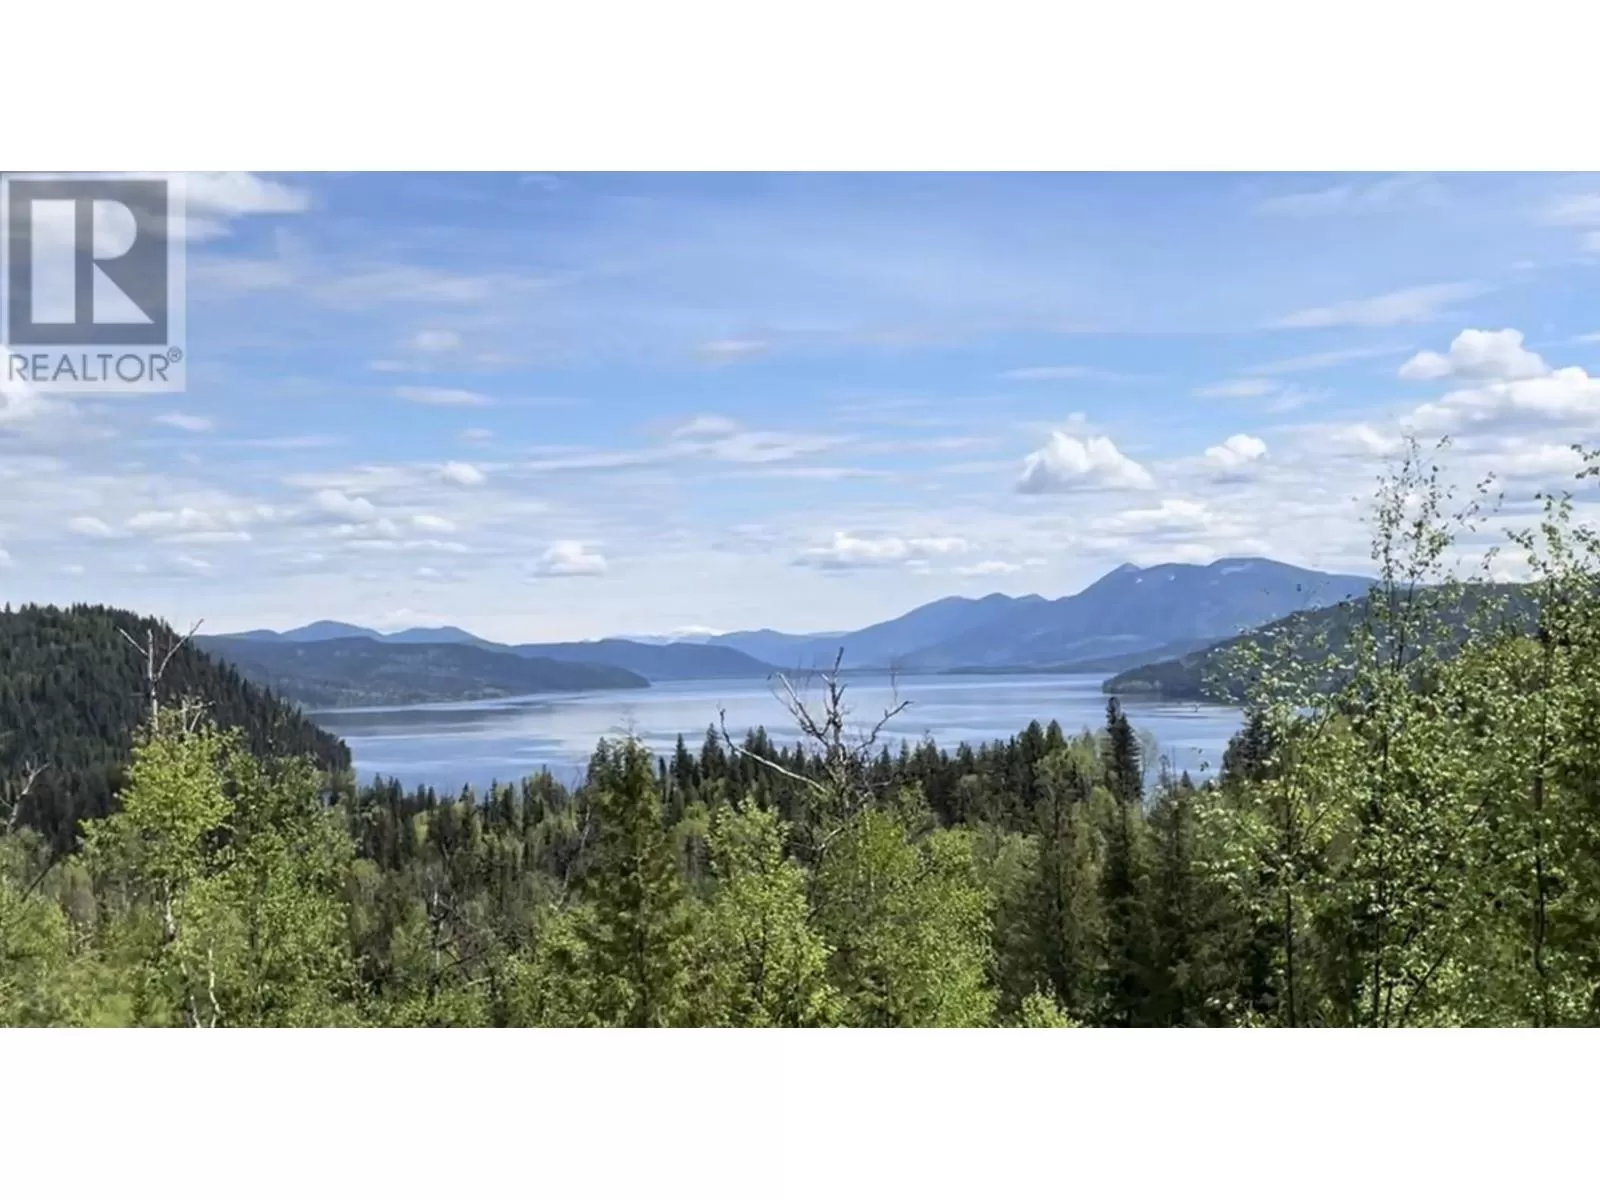 Dl 3919 Canim Lake, Canim Lake, British Columbia V0K 1J0